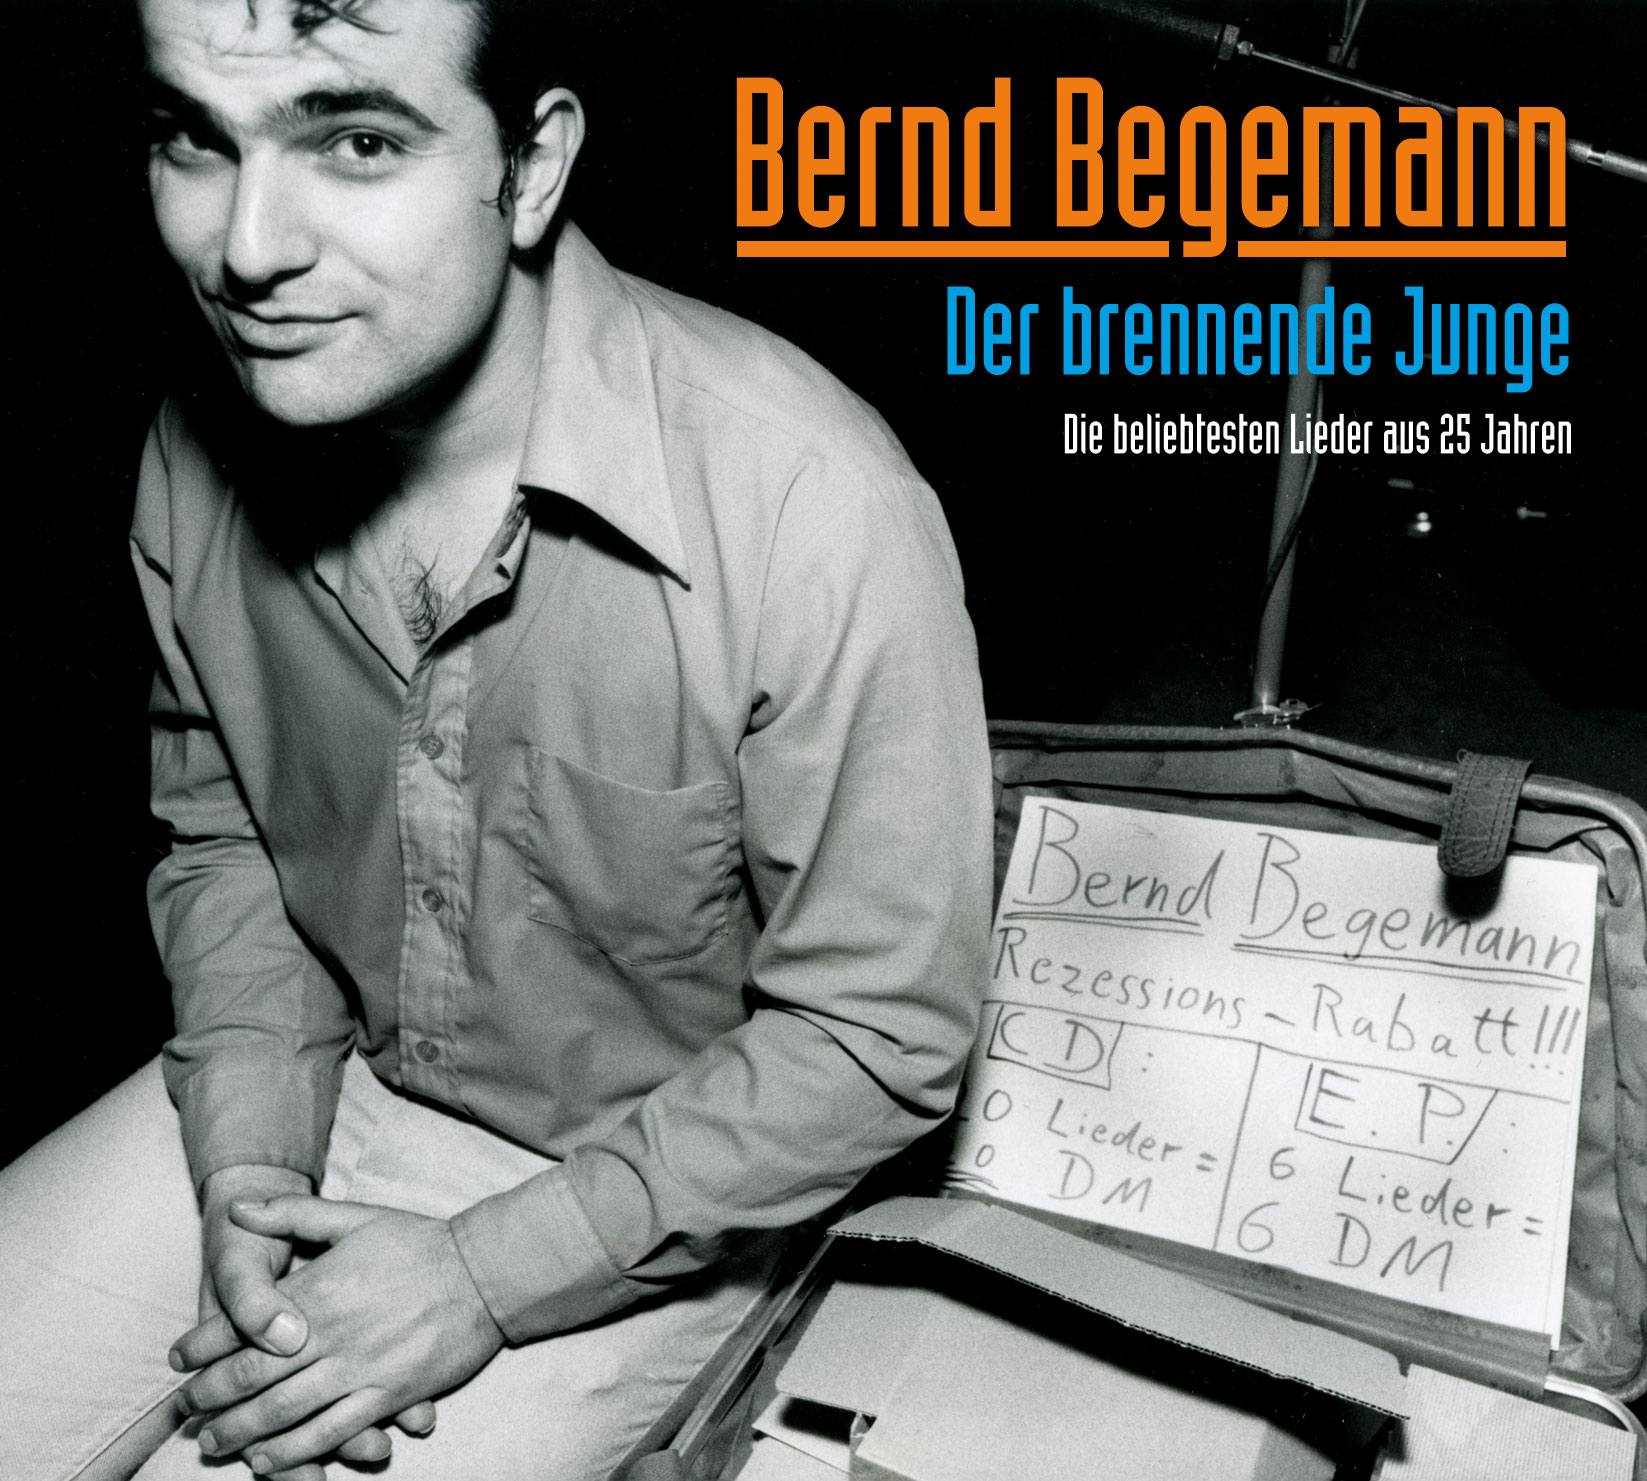 Bernd Begemann "Der brennende Junge - Die beliebtesten Lieder aus 25 Jahren"